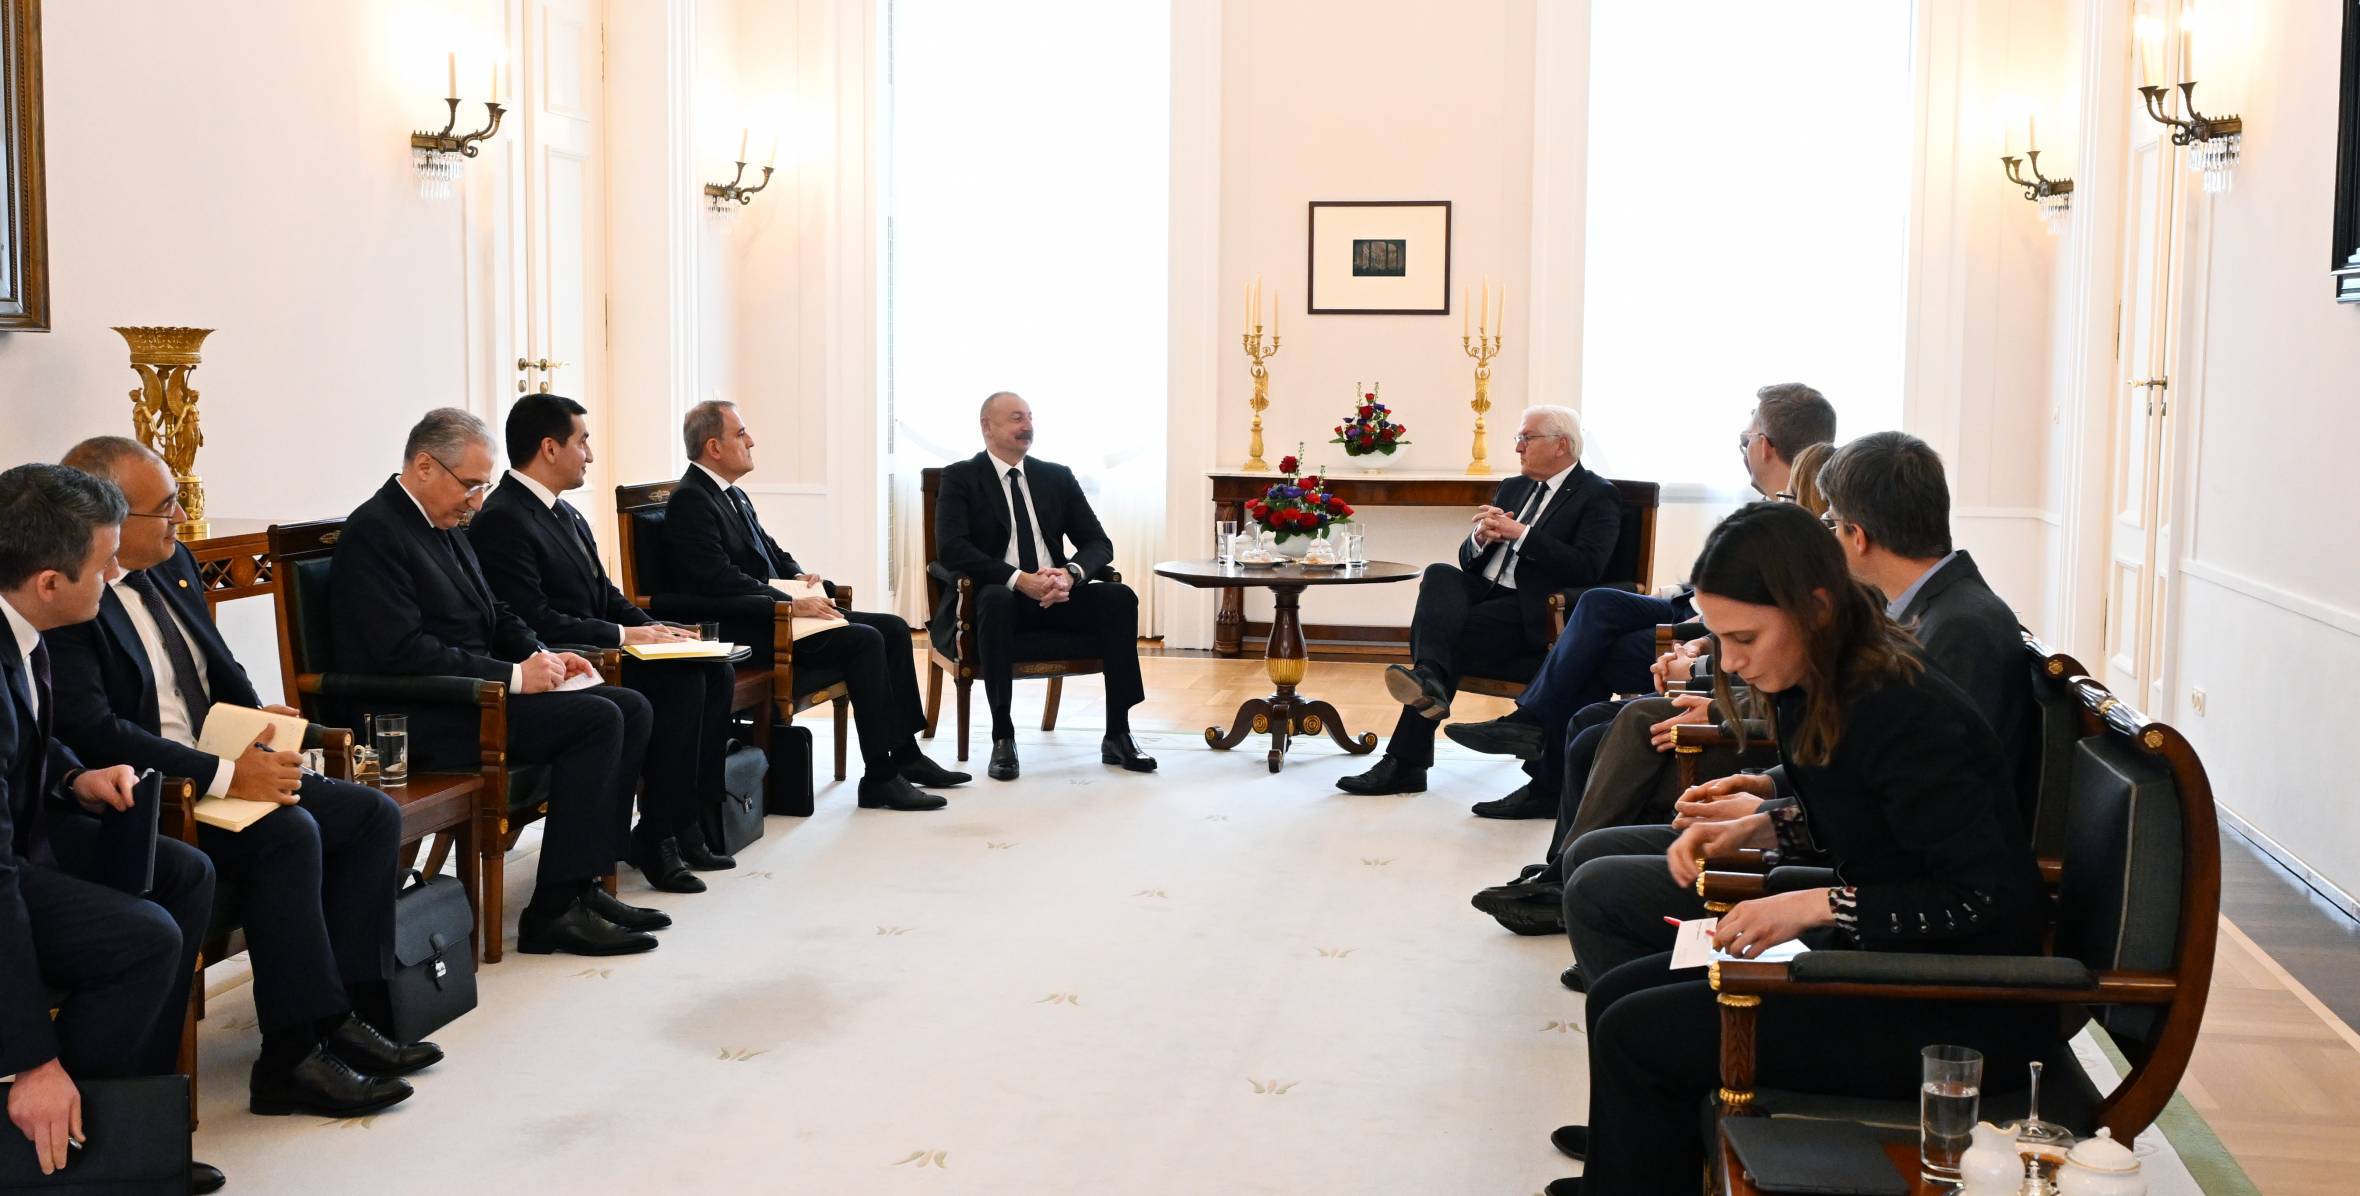 Состоялась встреча Ильхама Алиева и Президента Германии Франка-Вальтера Штайнмайера в расширенном составе